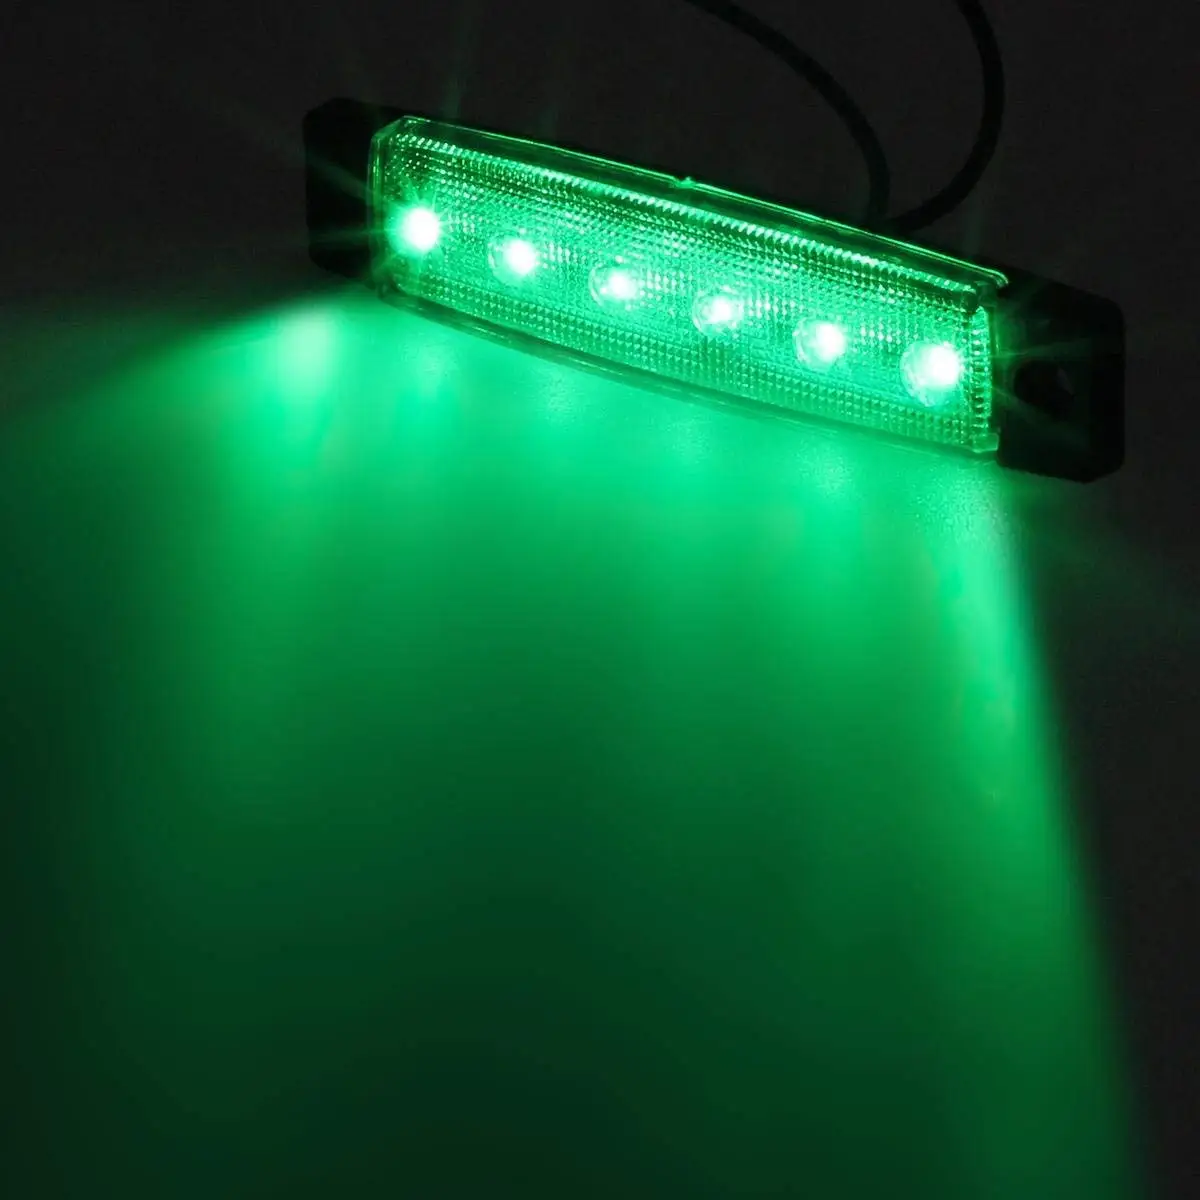 Автомобильный Внешнее освещение светодиодный 12 V-24 V 6 Автомобильный светодиодный SMD с изображением машинок и автобусов, грузовик боковой габаритный фонарь светильник s индикатор светодиодный прицеп задняя сторона светильник - Испускаемый цвет: Green